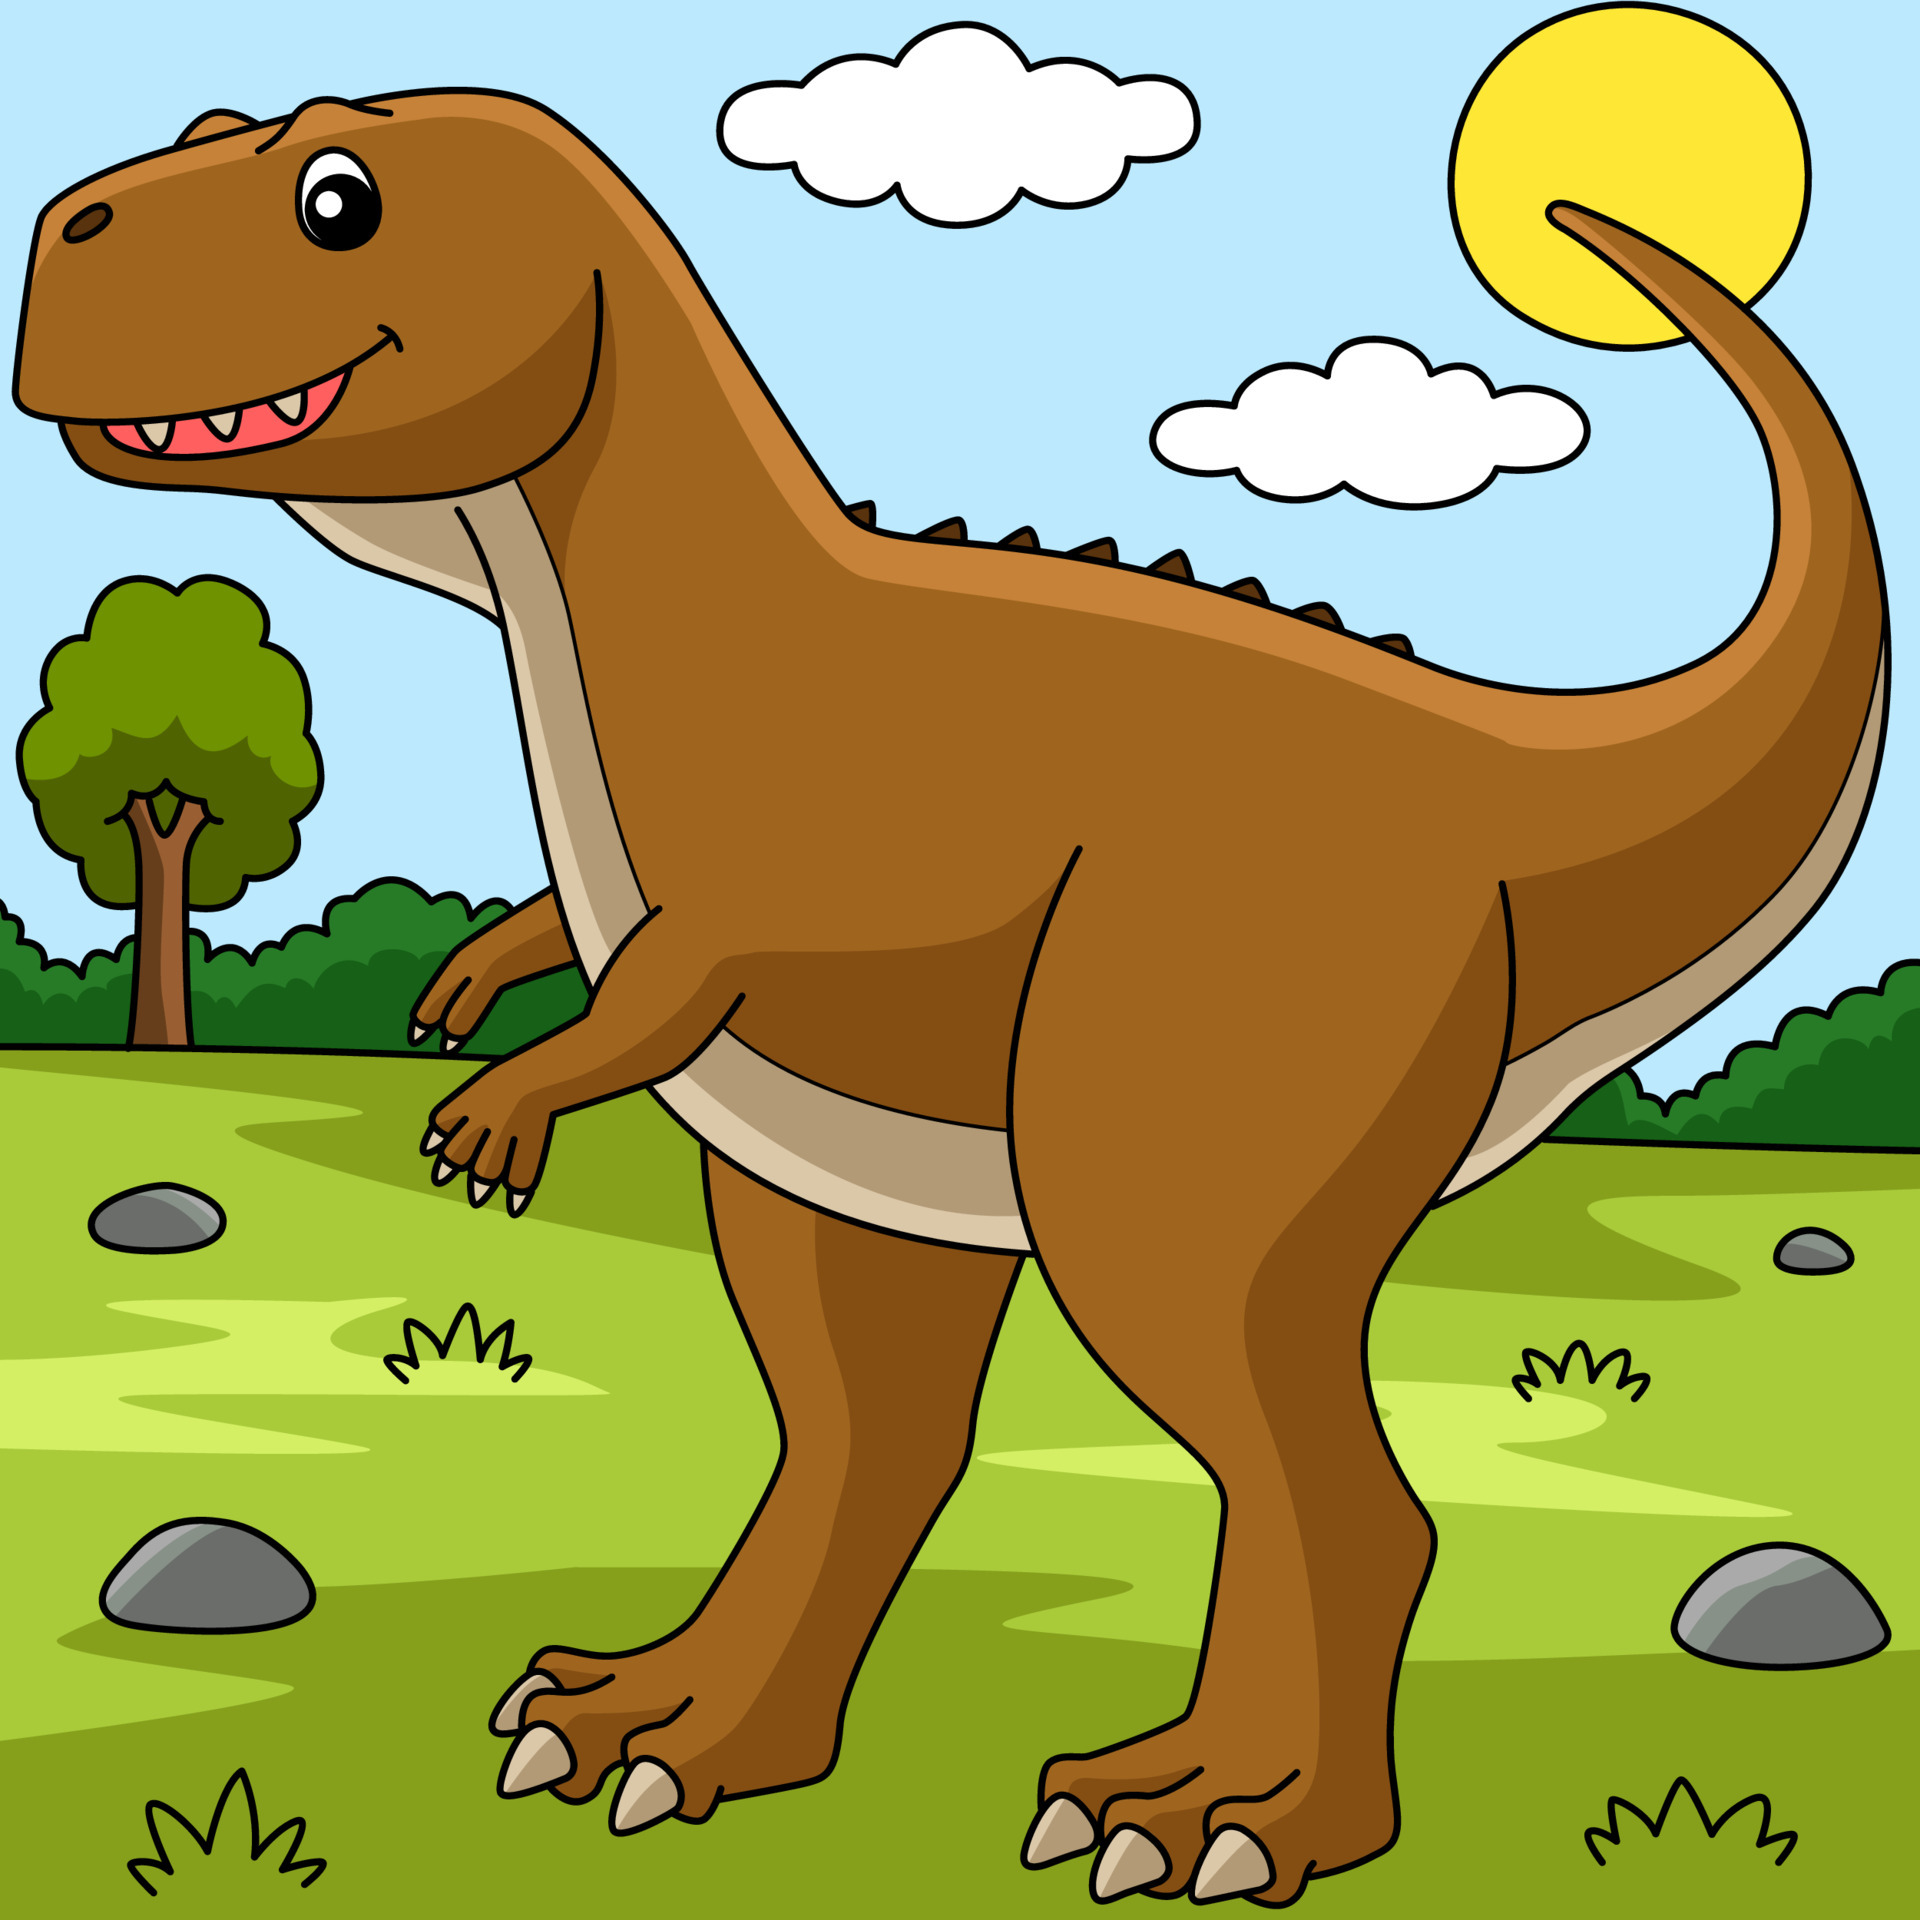 Desenho Dinossauro PNG , Clipart Dos Desenhos Animados, Clipart De  Dinossauro, Dinossauro Imagem PNG e Vetor Para Download Gratuito